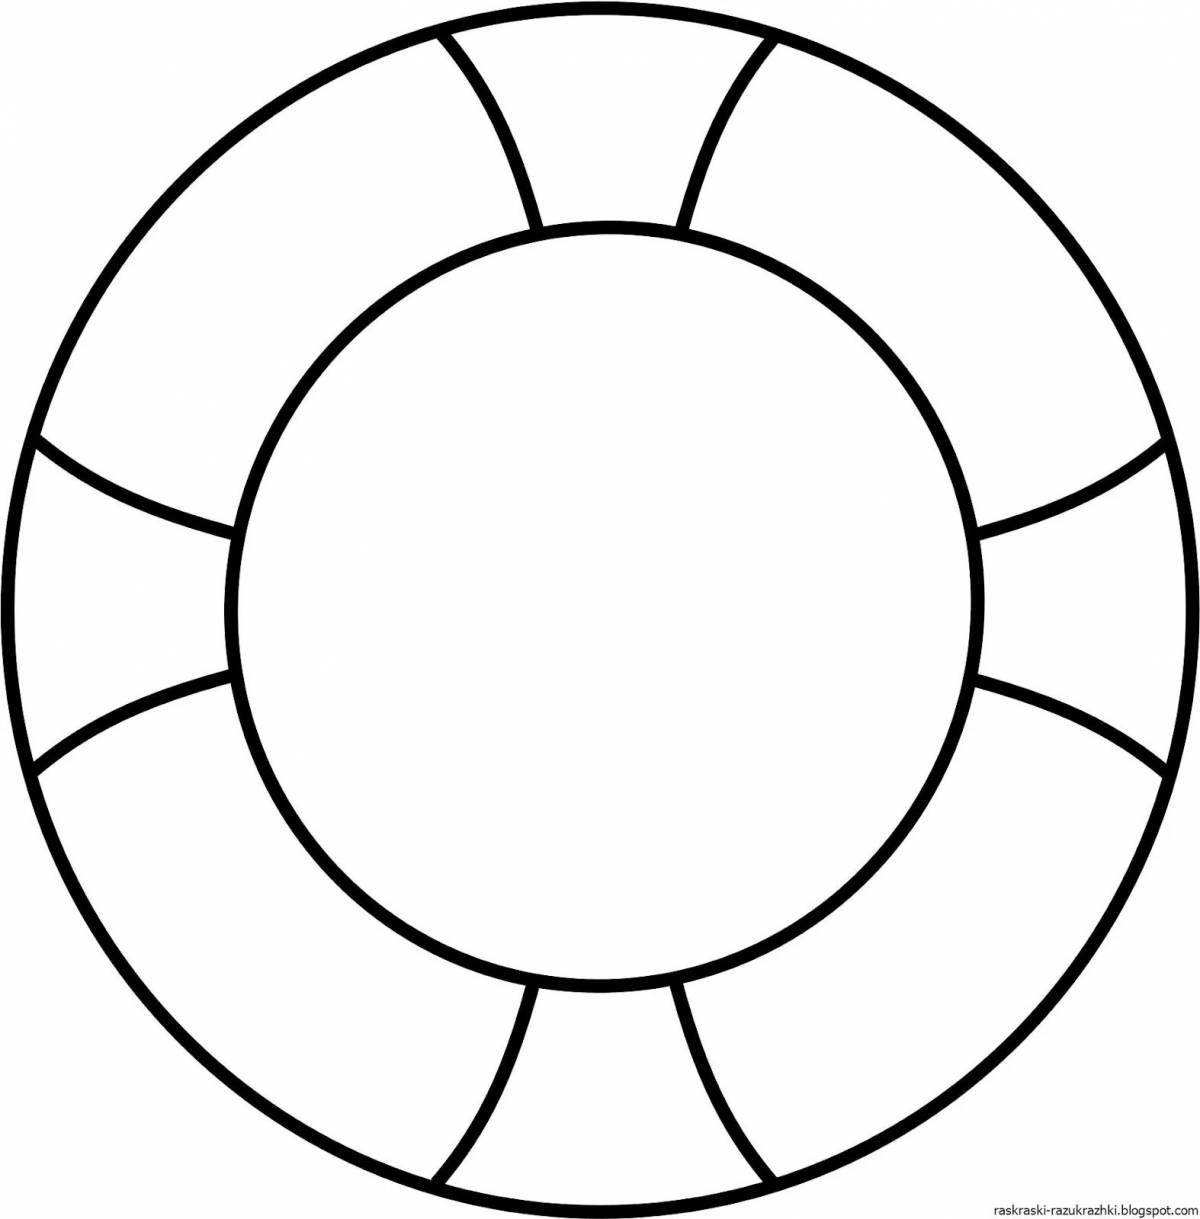 Подробная страница раскраски кругового узора